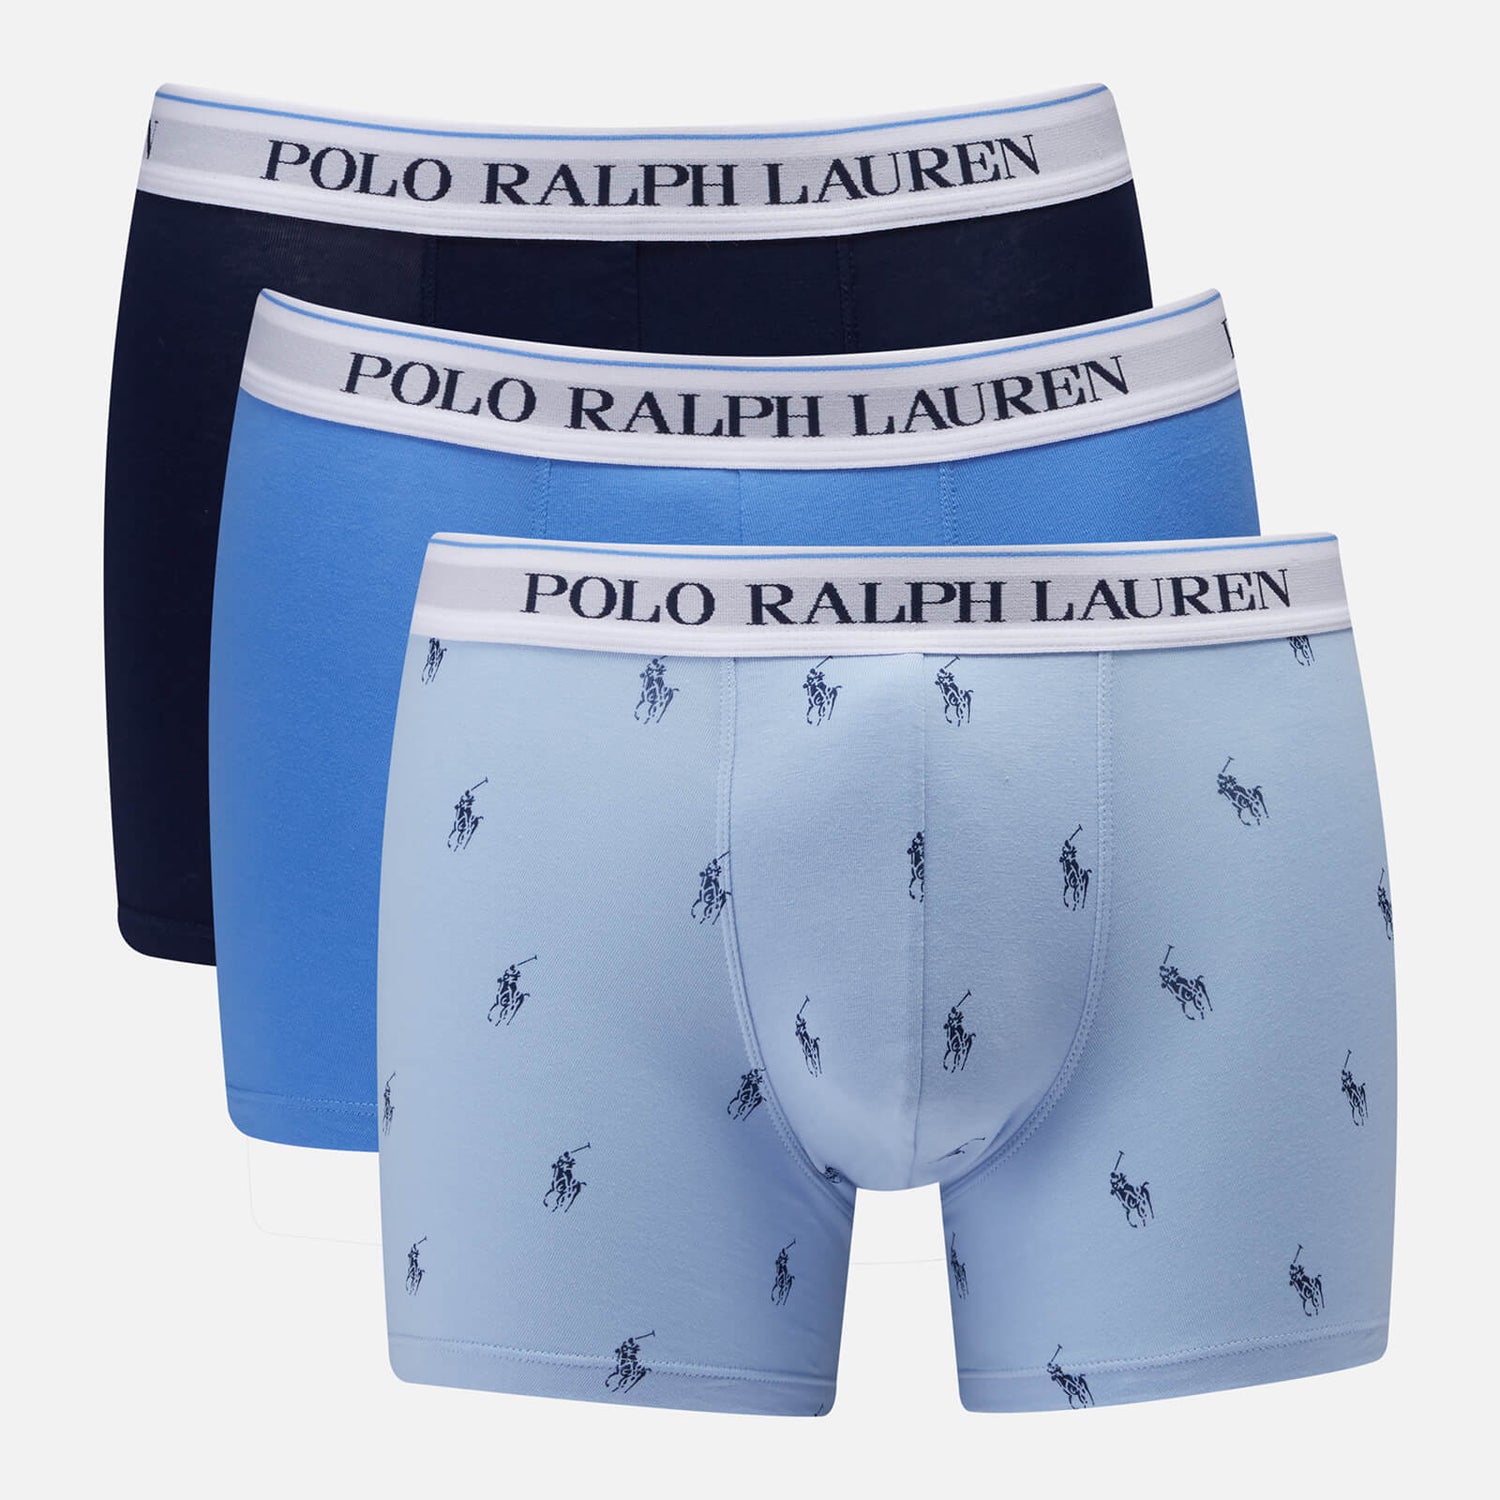 Polo Ralph Lauren Men's 3-Pack Boxer Briefs - Blue AOPP/HB Blue/Newport ...